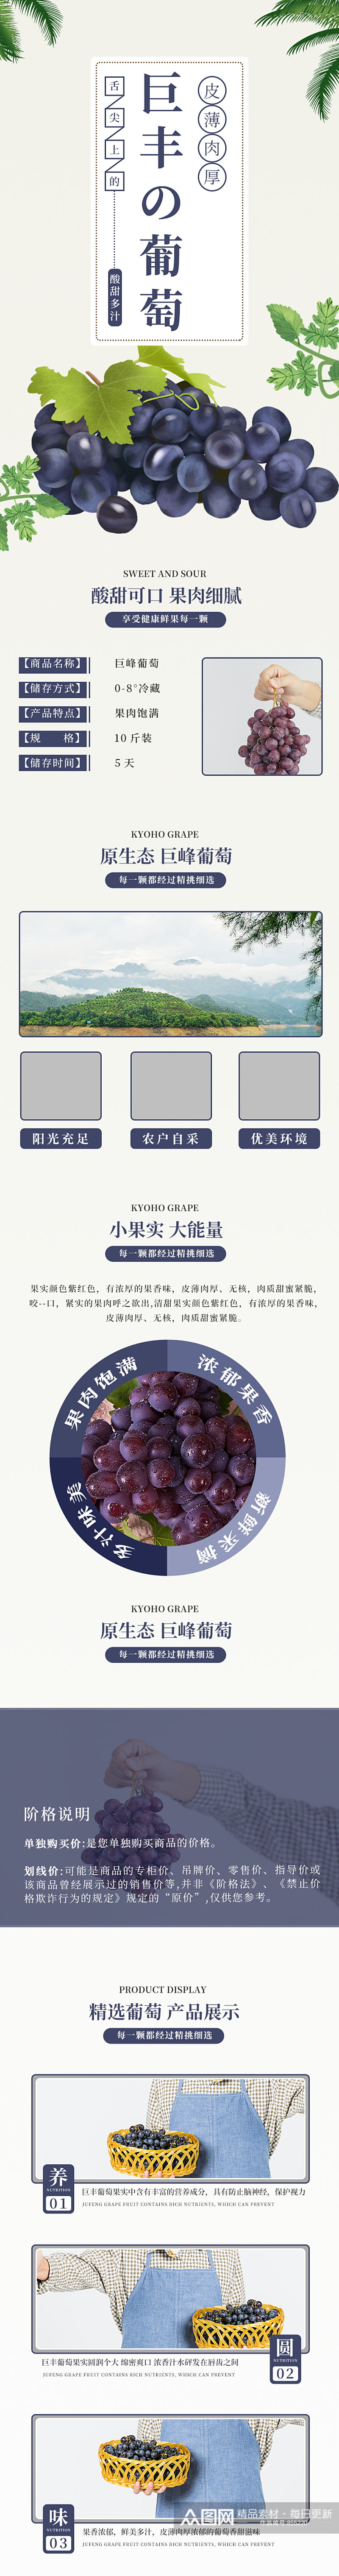 紫色巨峰葡萄电商淘宝详情页模板食品茶饮素材